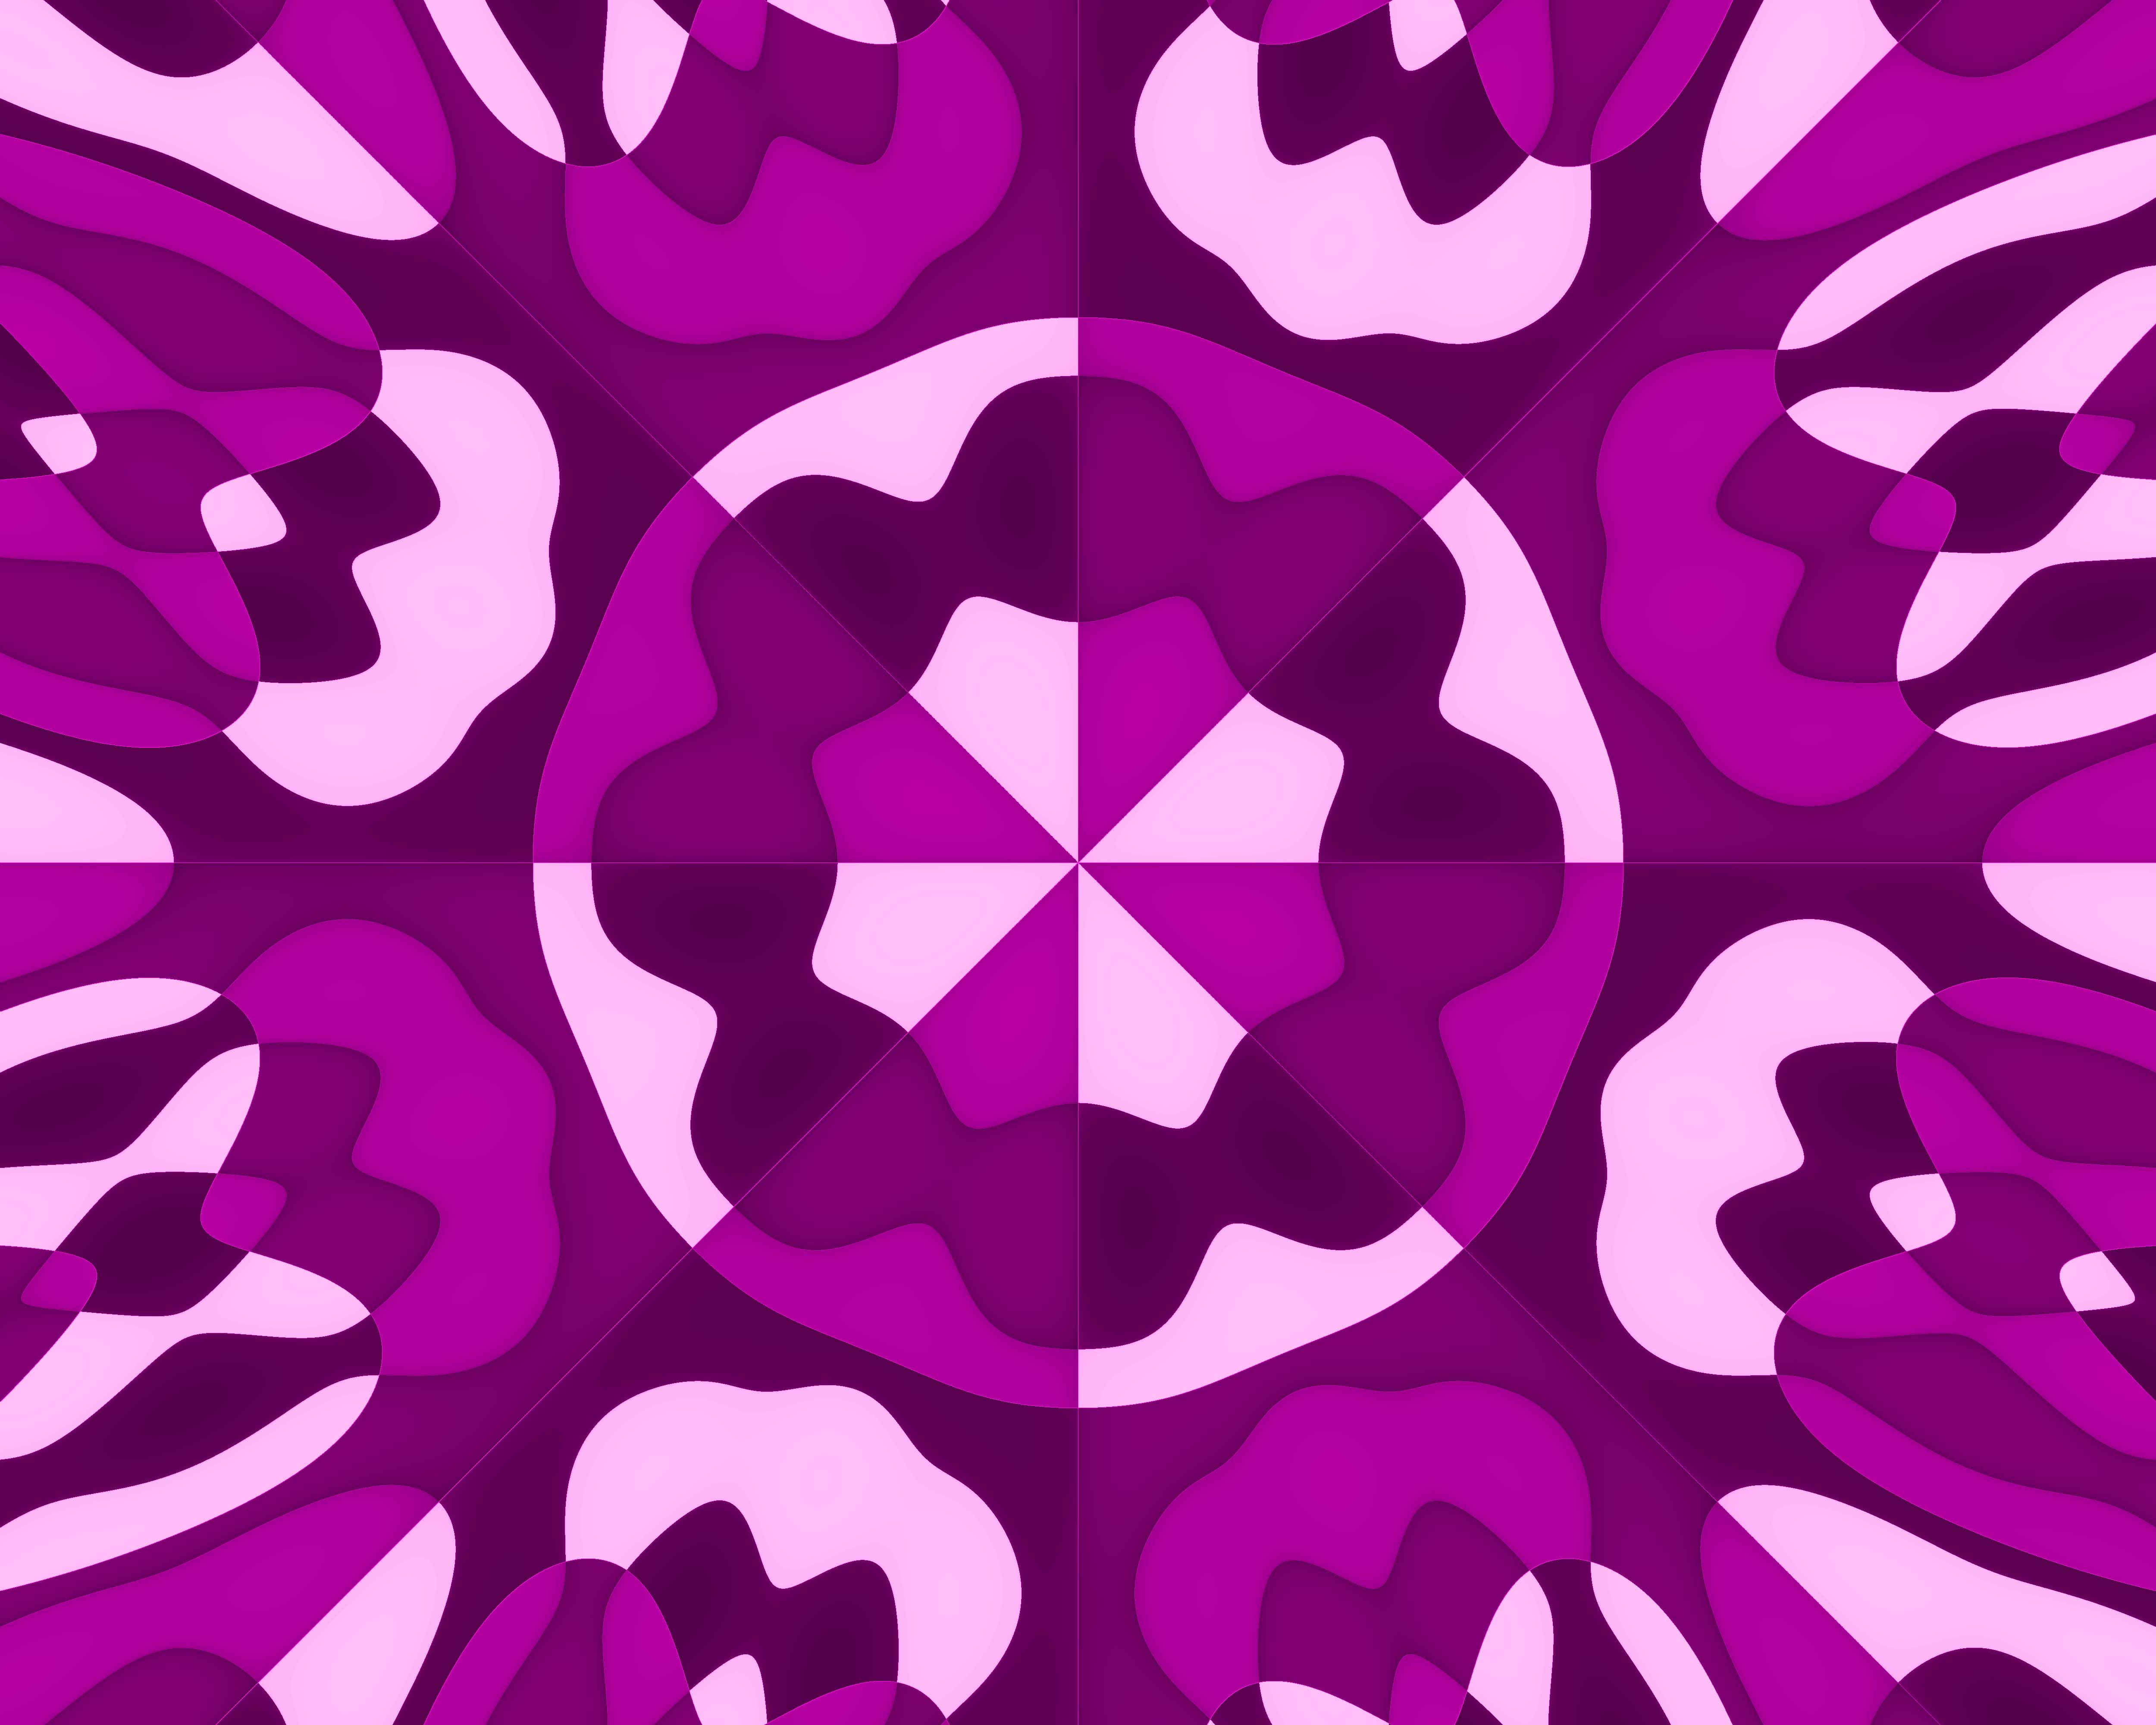 Desktop Backgrounds Violet 